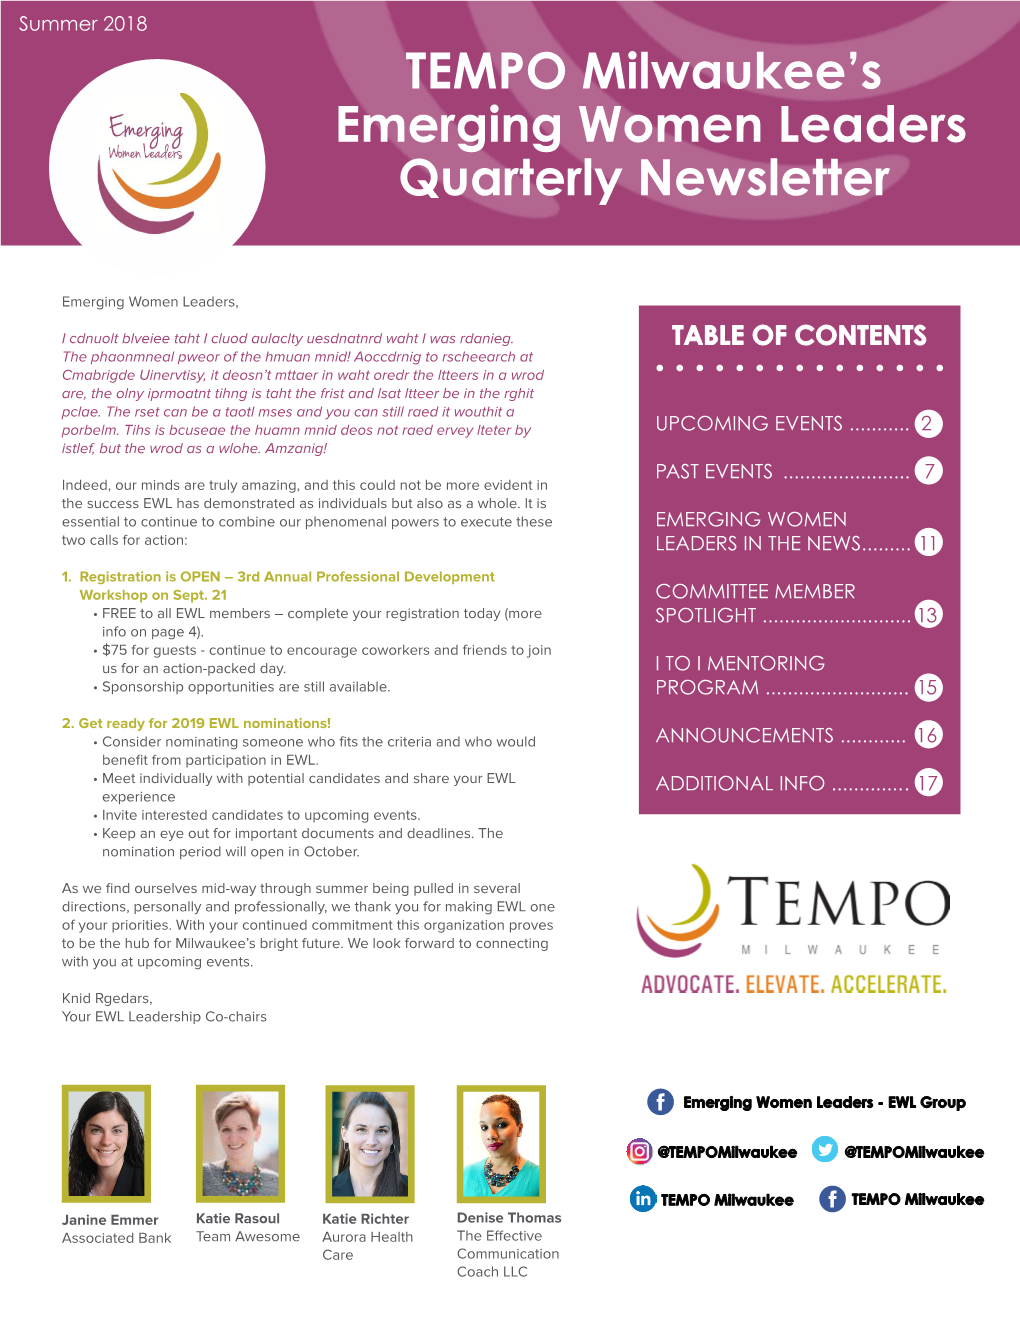 TEMPO Milwaukee's Emerging Women Leaders Quarterly Newsletter